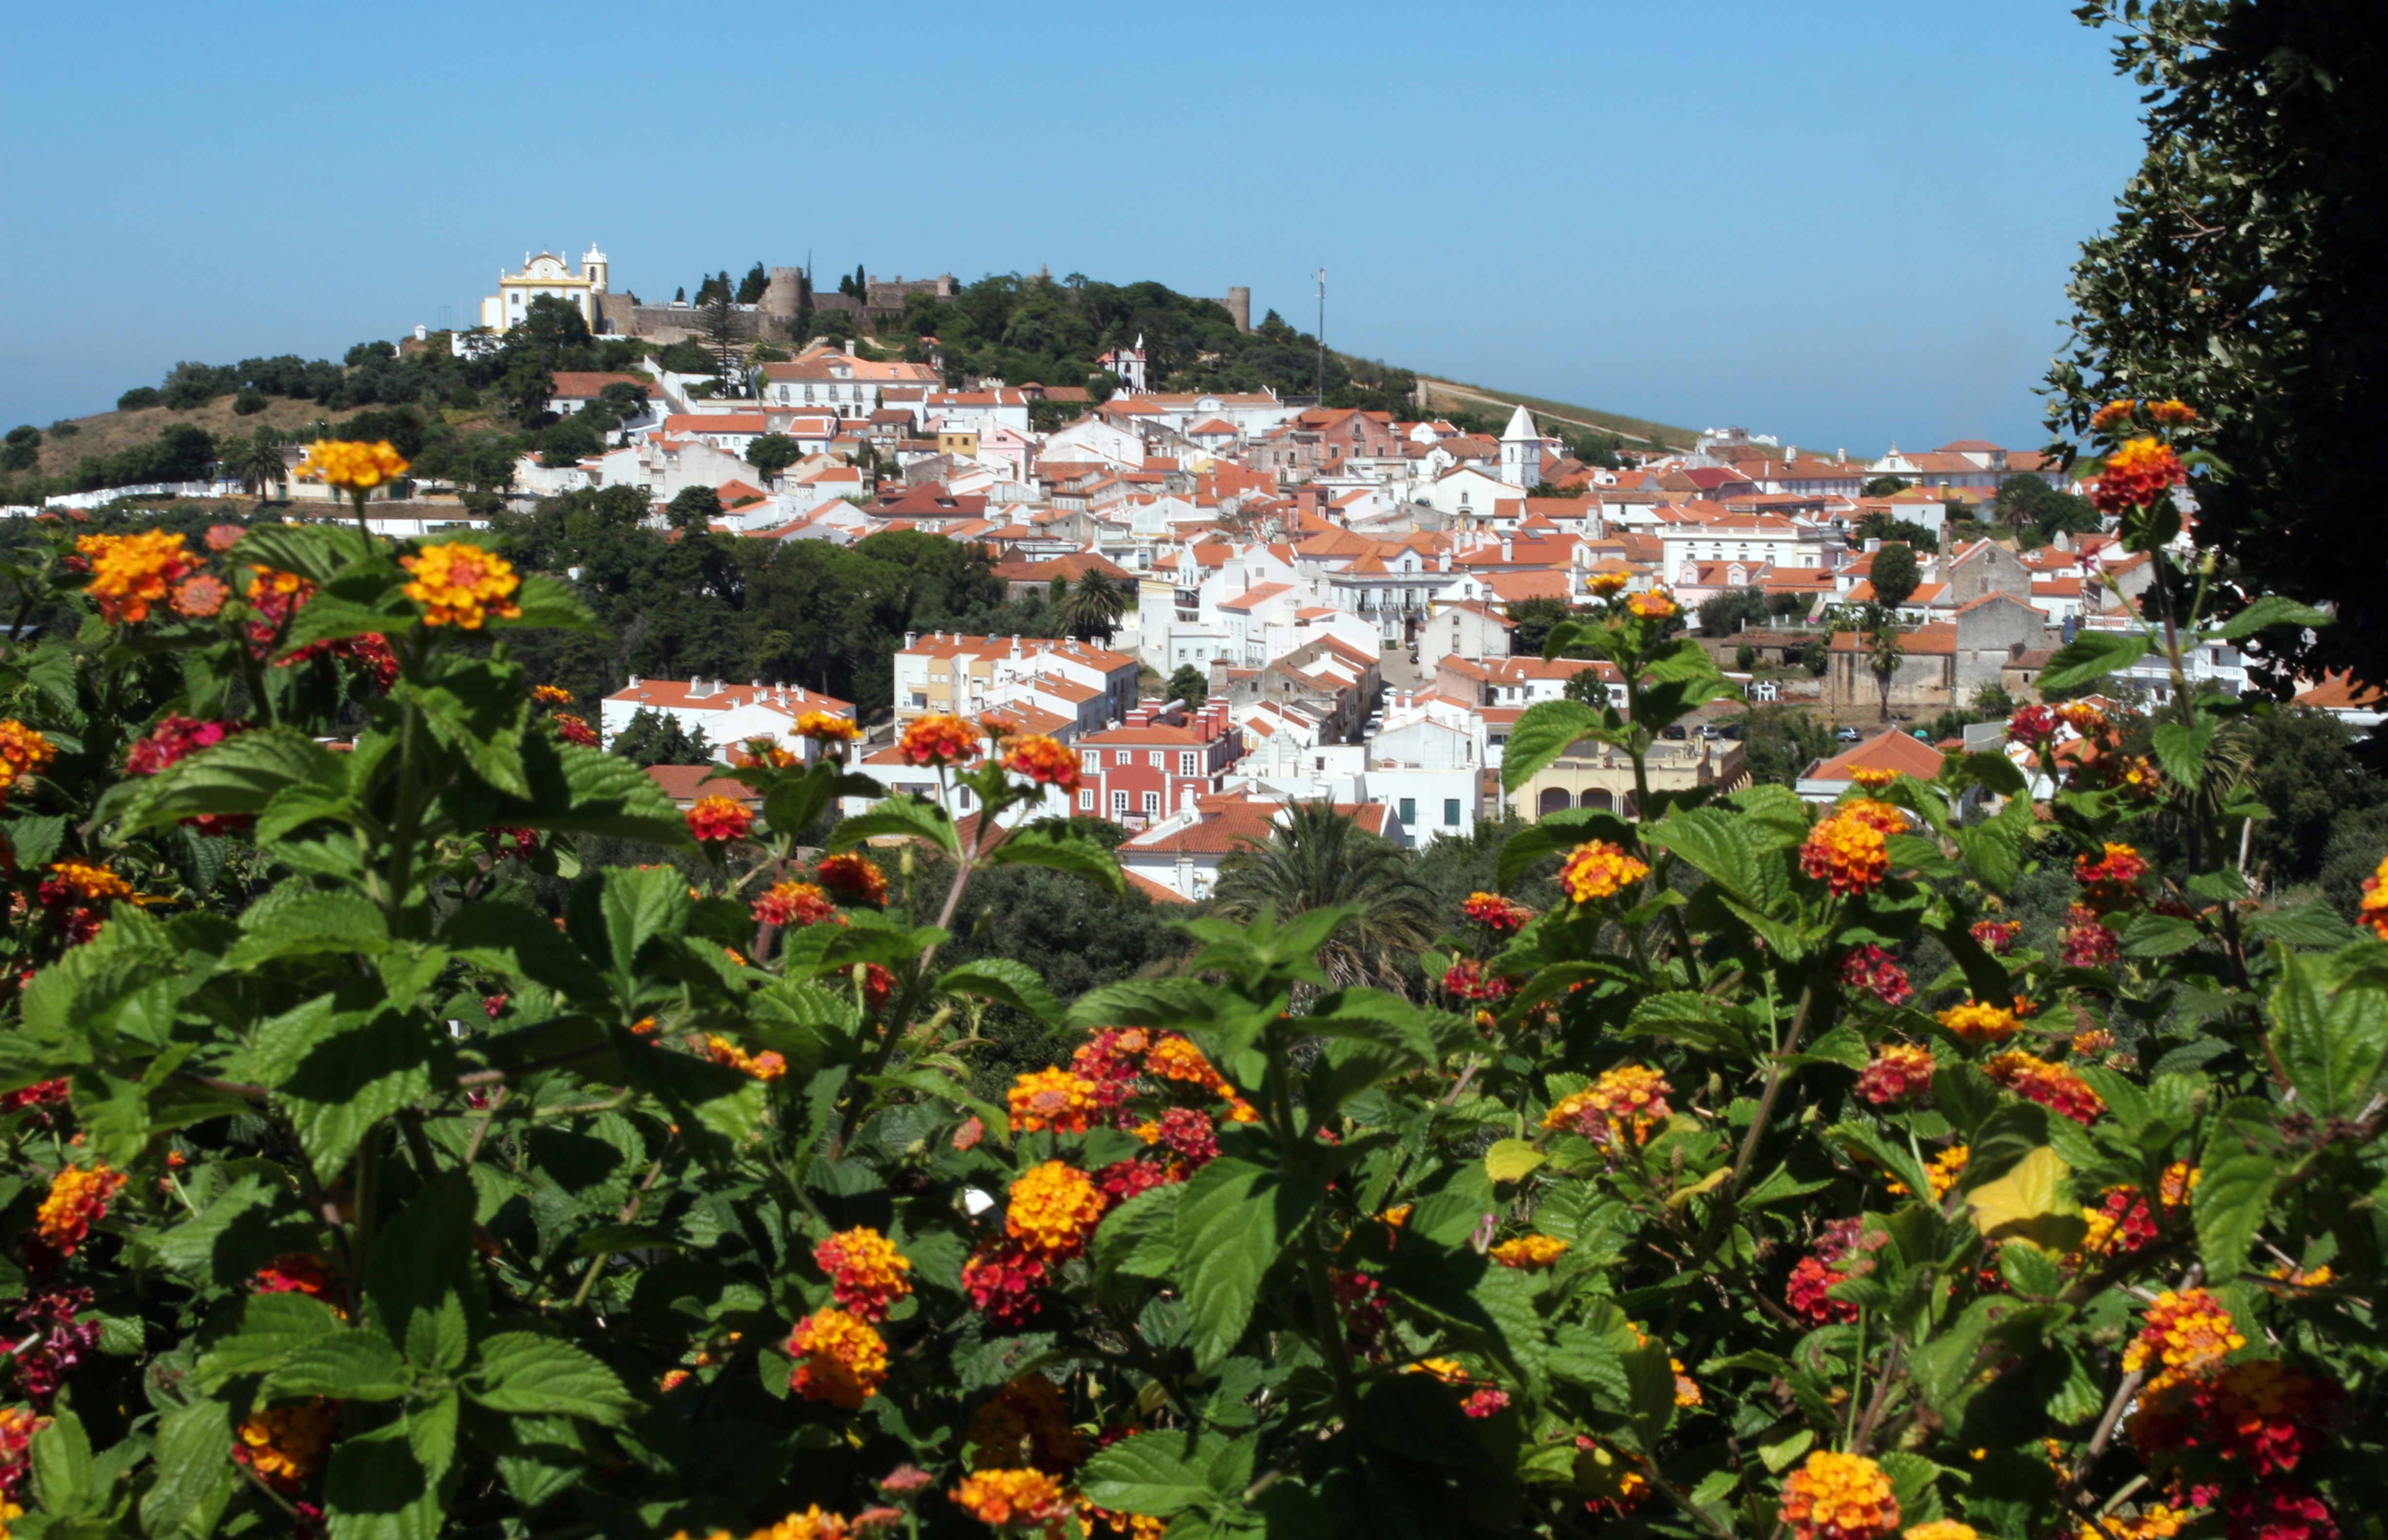 Visite o Alentejo em Portugal